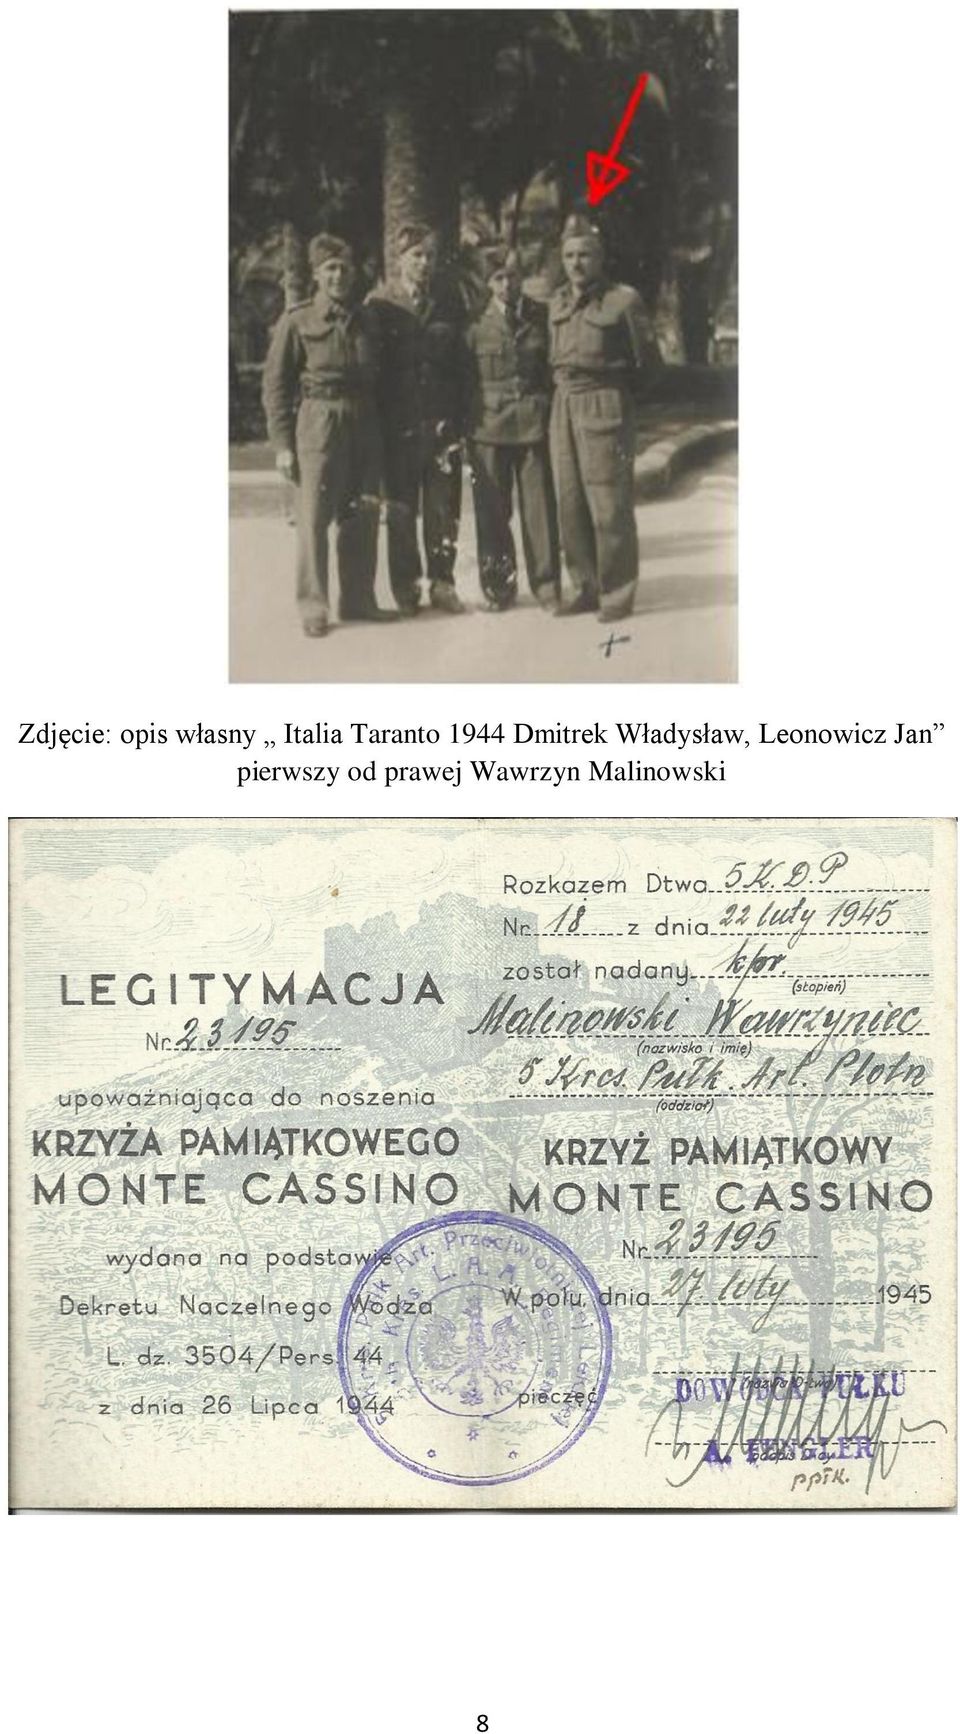 Władysław, Leonowicz Jan